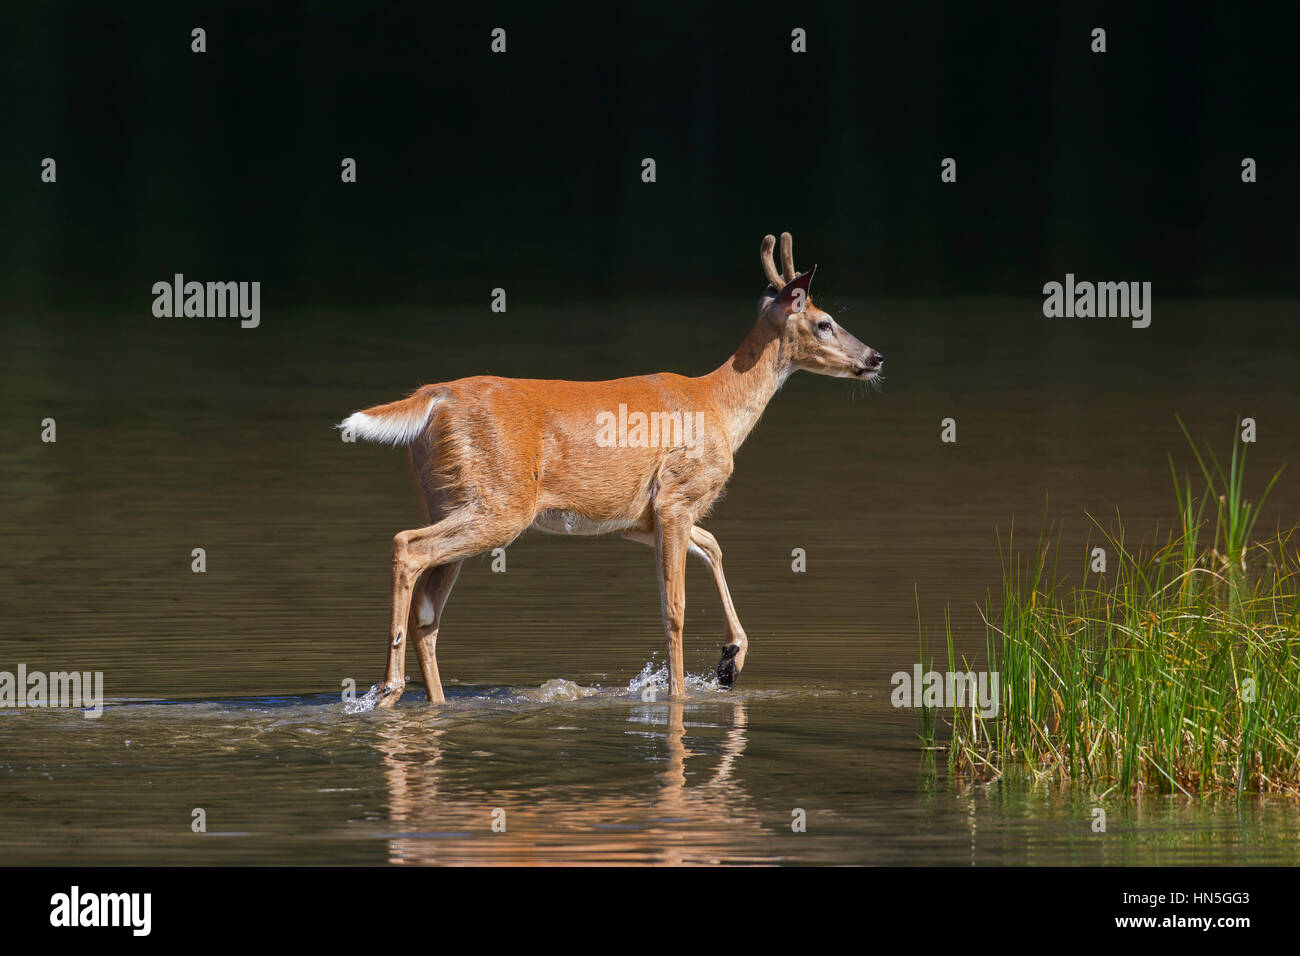 / Cerf Le cerf de Virginie (Odocoileus virginianus), young buck avec bois recouvert de velours dans les eaux peu profondes du lac, Canada Banque D'Images